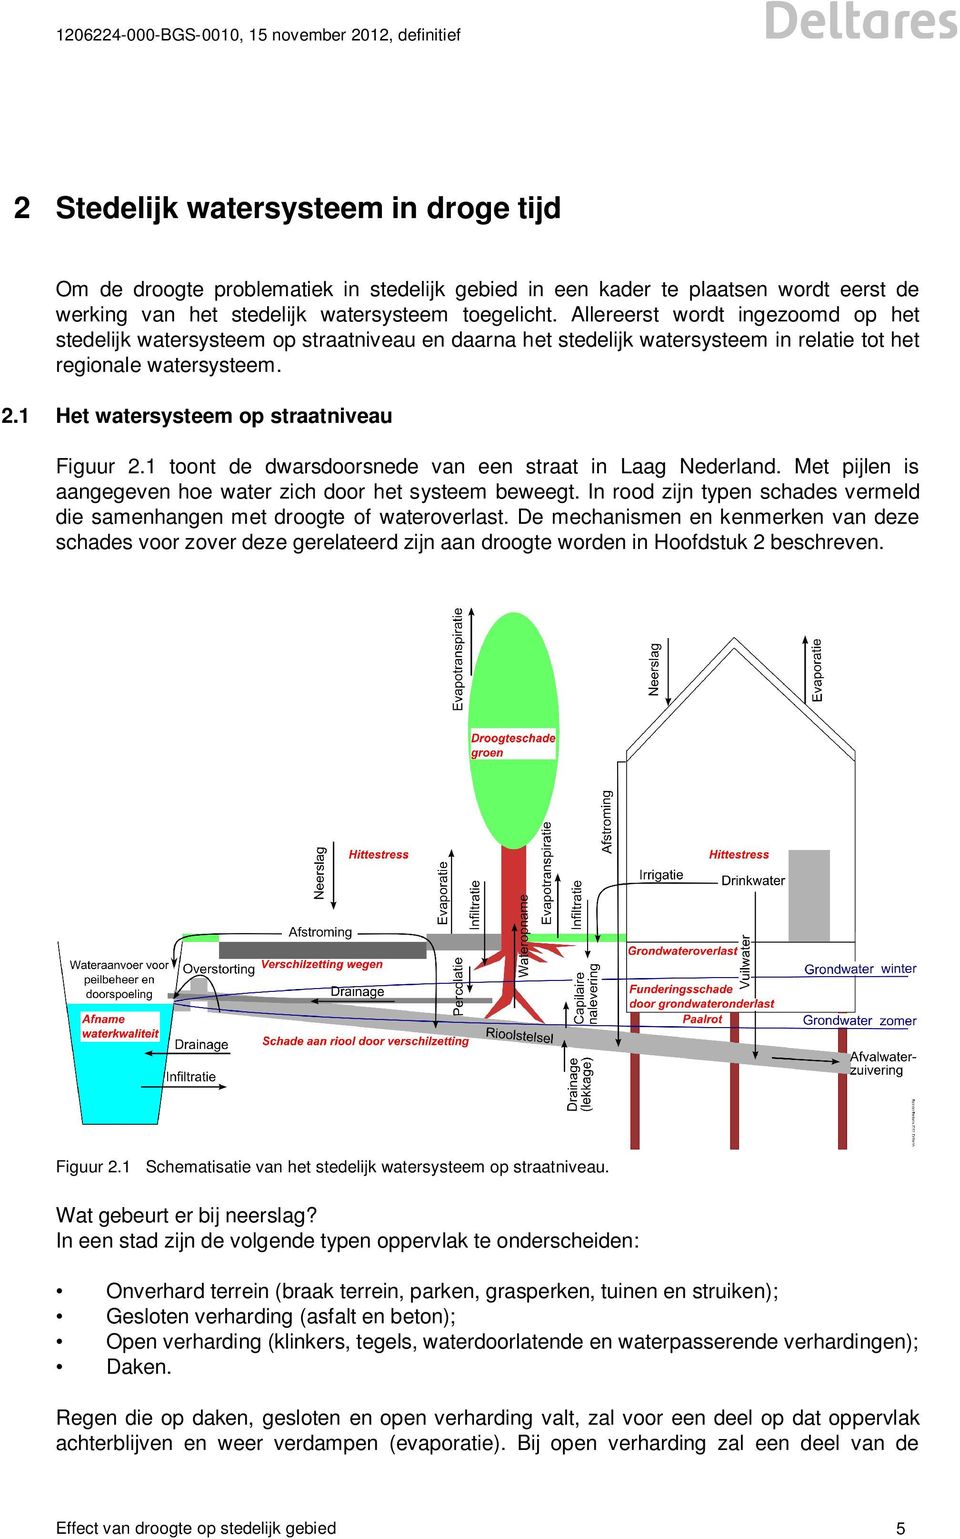 1 toont de dwarsdoorsnede van een straat in Laag Nederland. Met pijlen is aangegeven hoe water zich door het systeem beweegt.